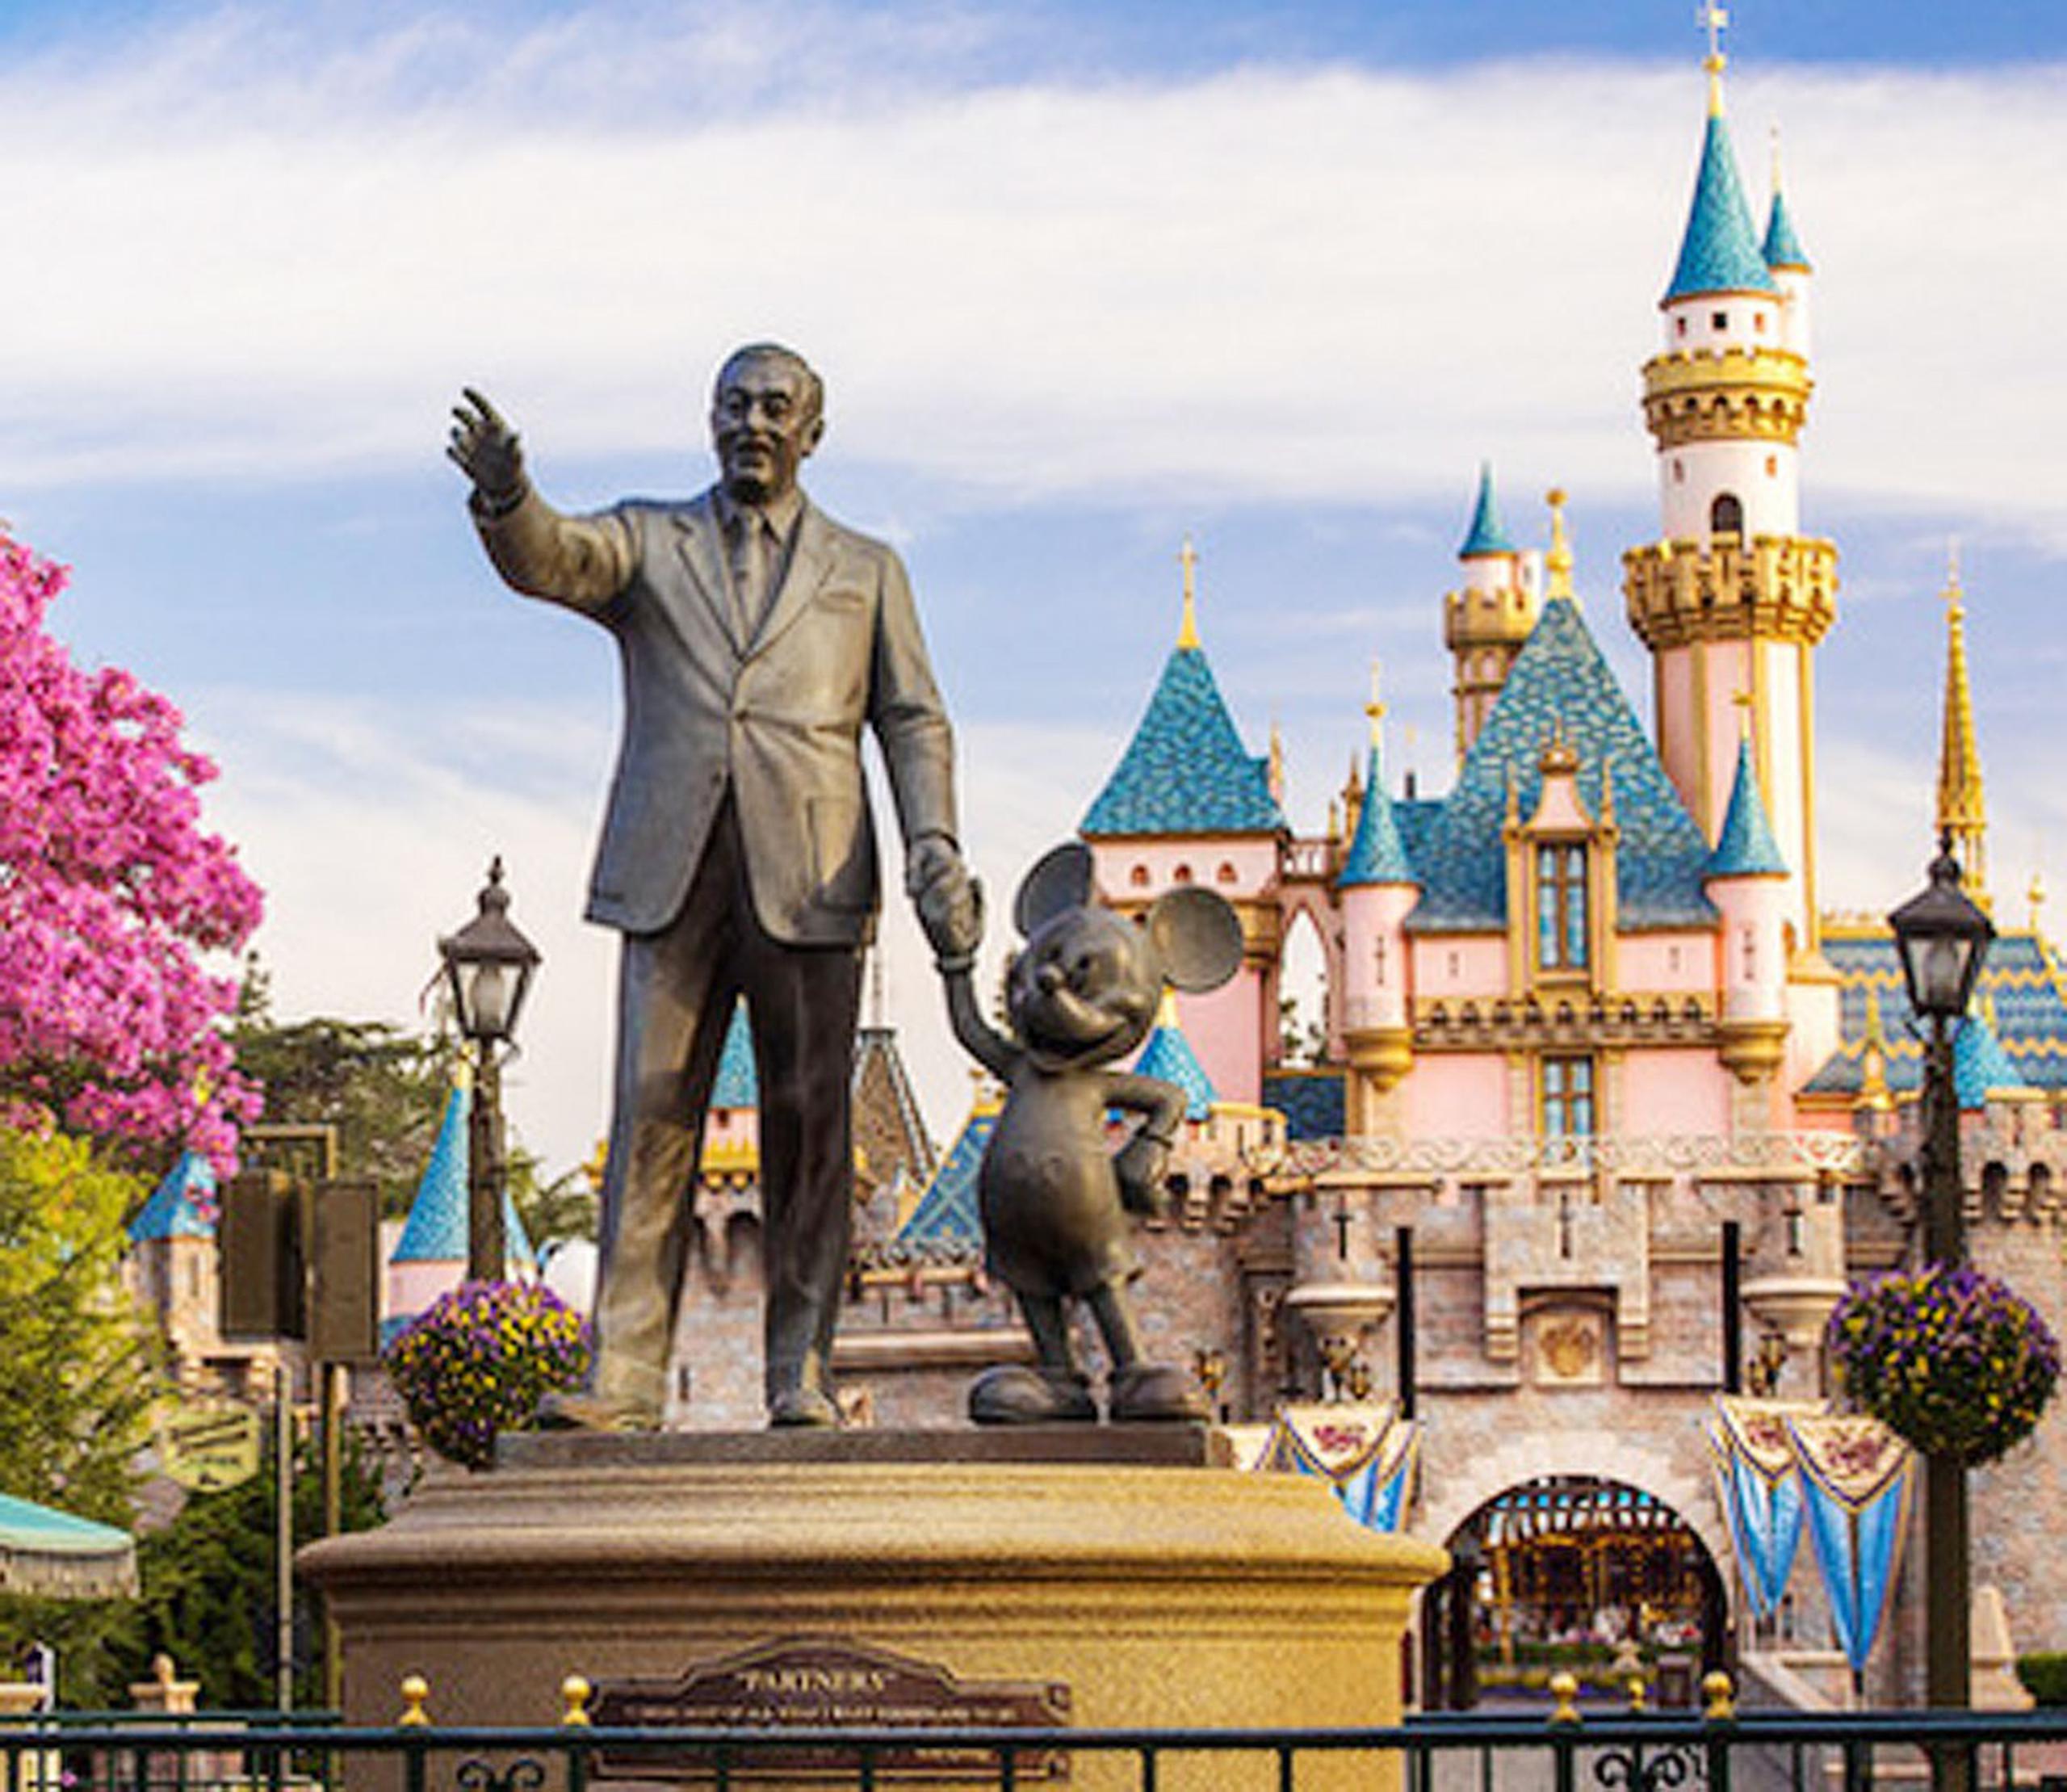 El parque estará el miércoles abierto al público 24 horas continuas. (Imagen tomada de la página de Disneyland)